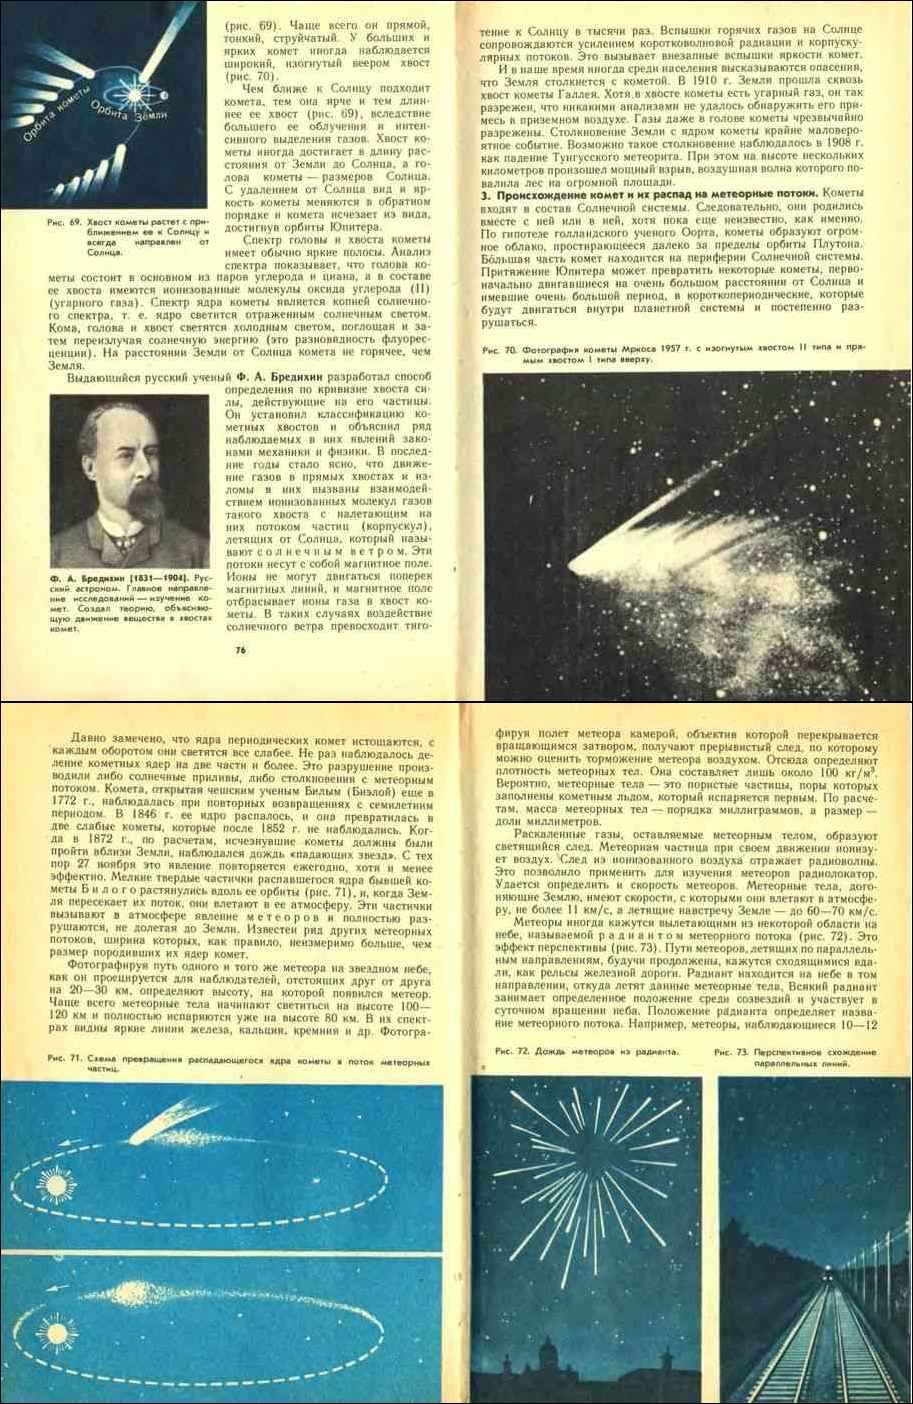 Учебное пособие: Астрономия 10 класс Воронцов-Вельяминов